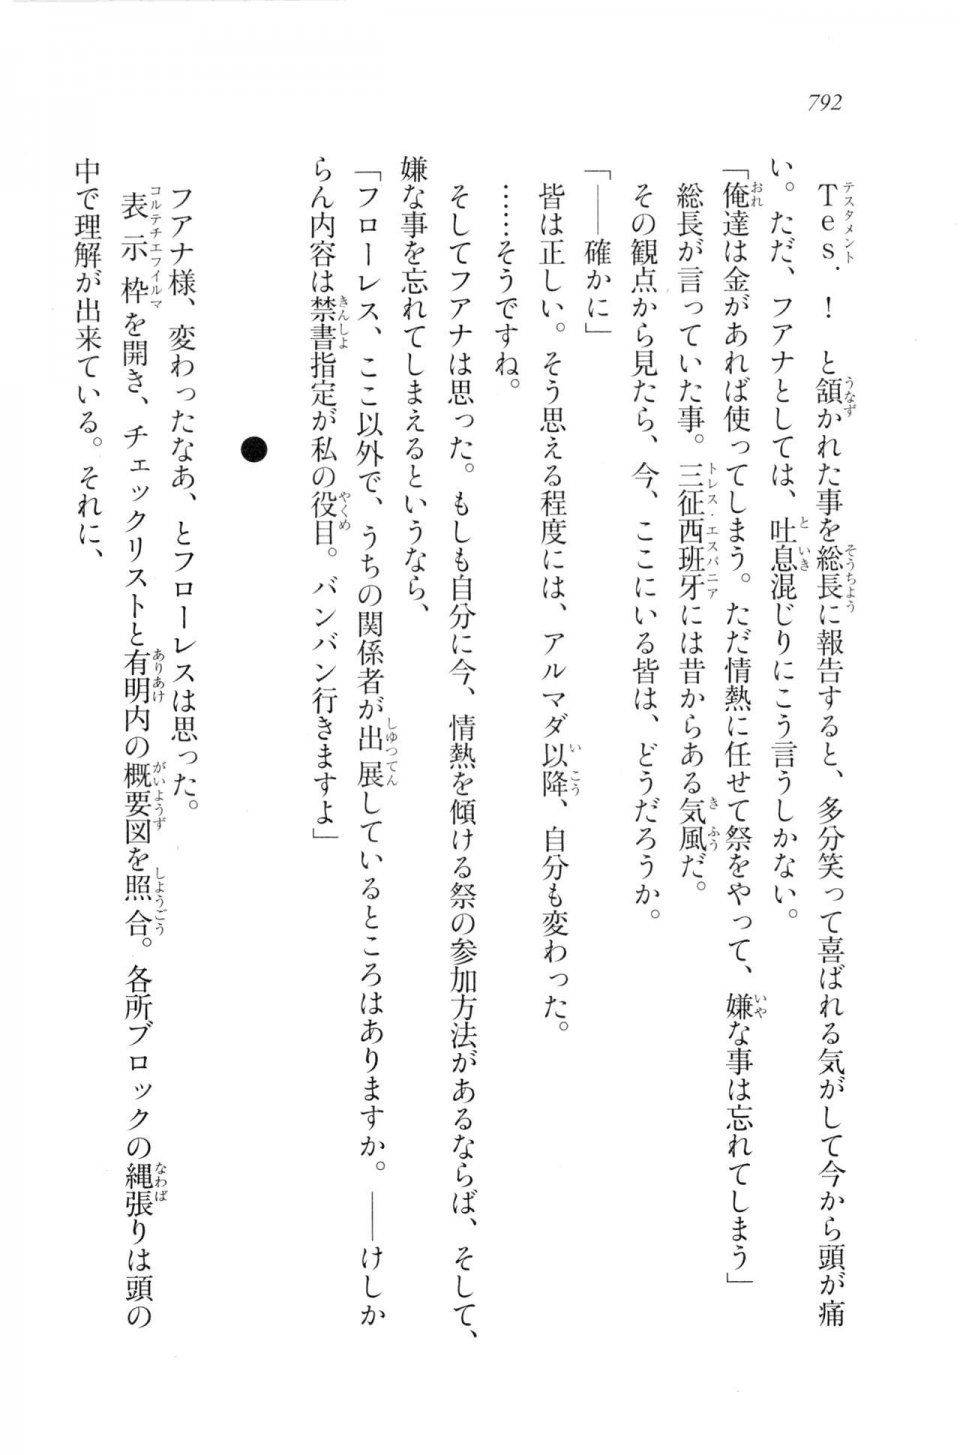 Kyoukai Senjou no Horizon LN Vol 20(8B) - Photo #792